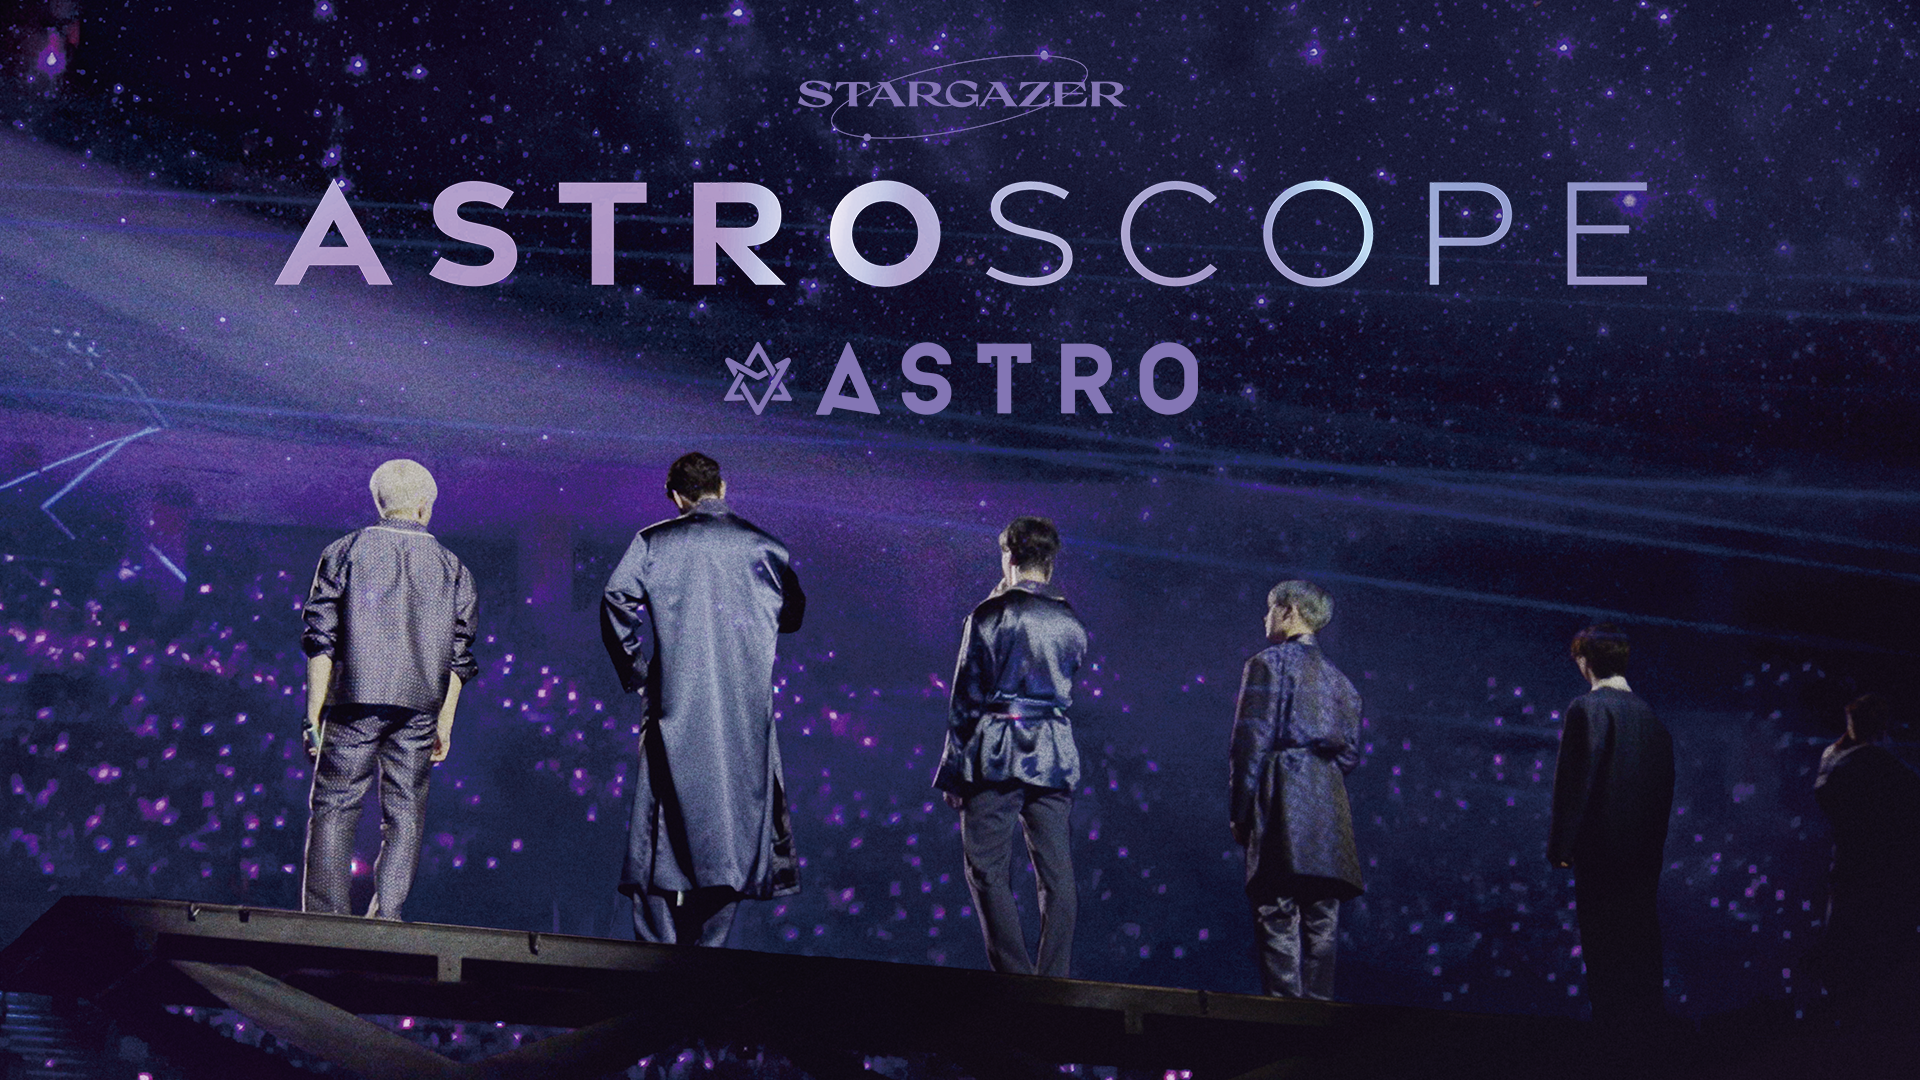 STARGAZER:ASTROSCOPE(音楽・アイドル / 2022) - 動画配信 | U-NEXT 31 